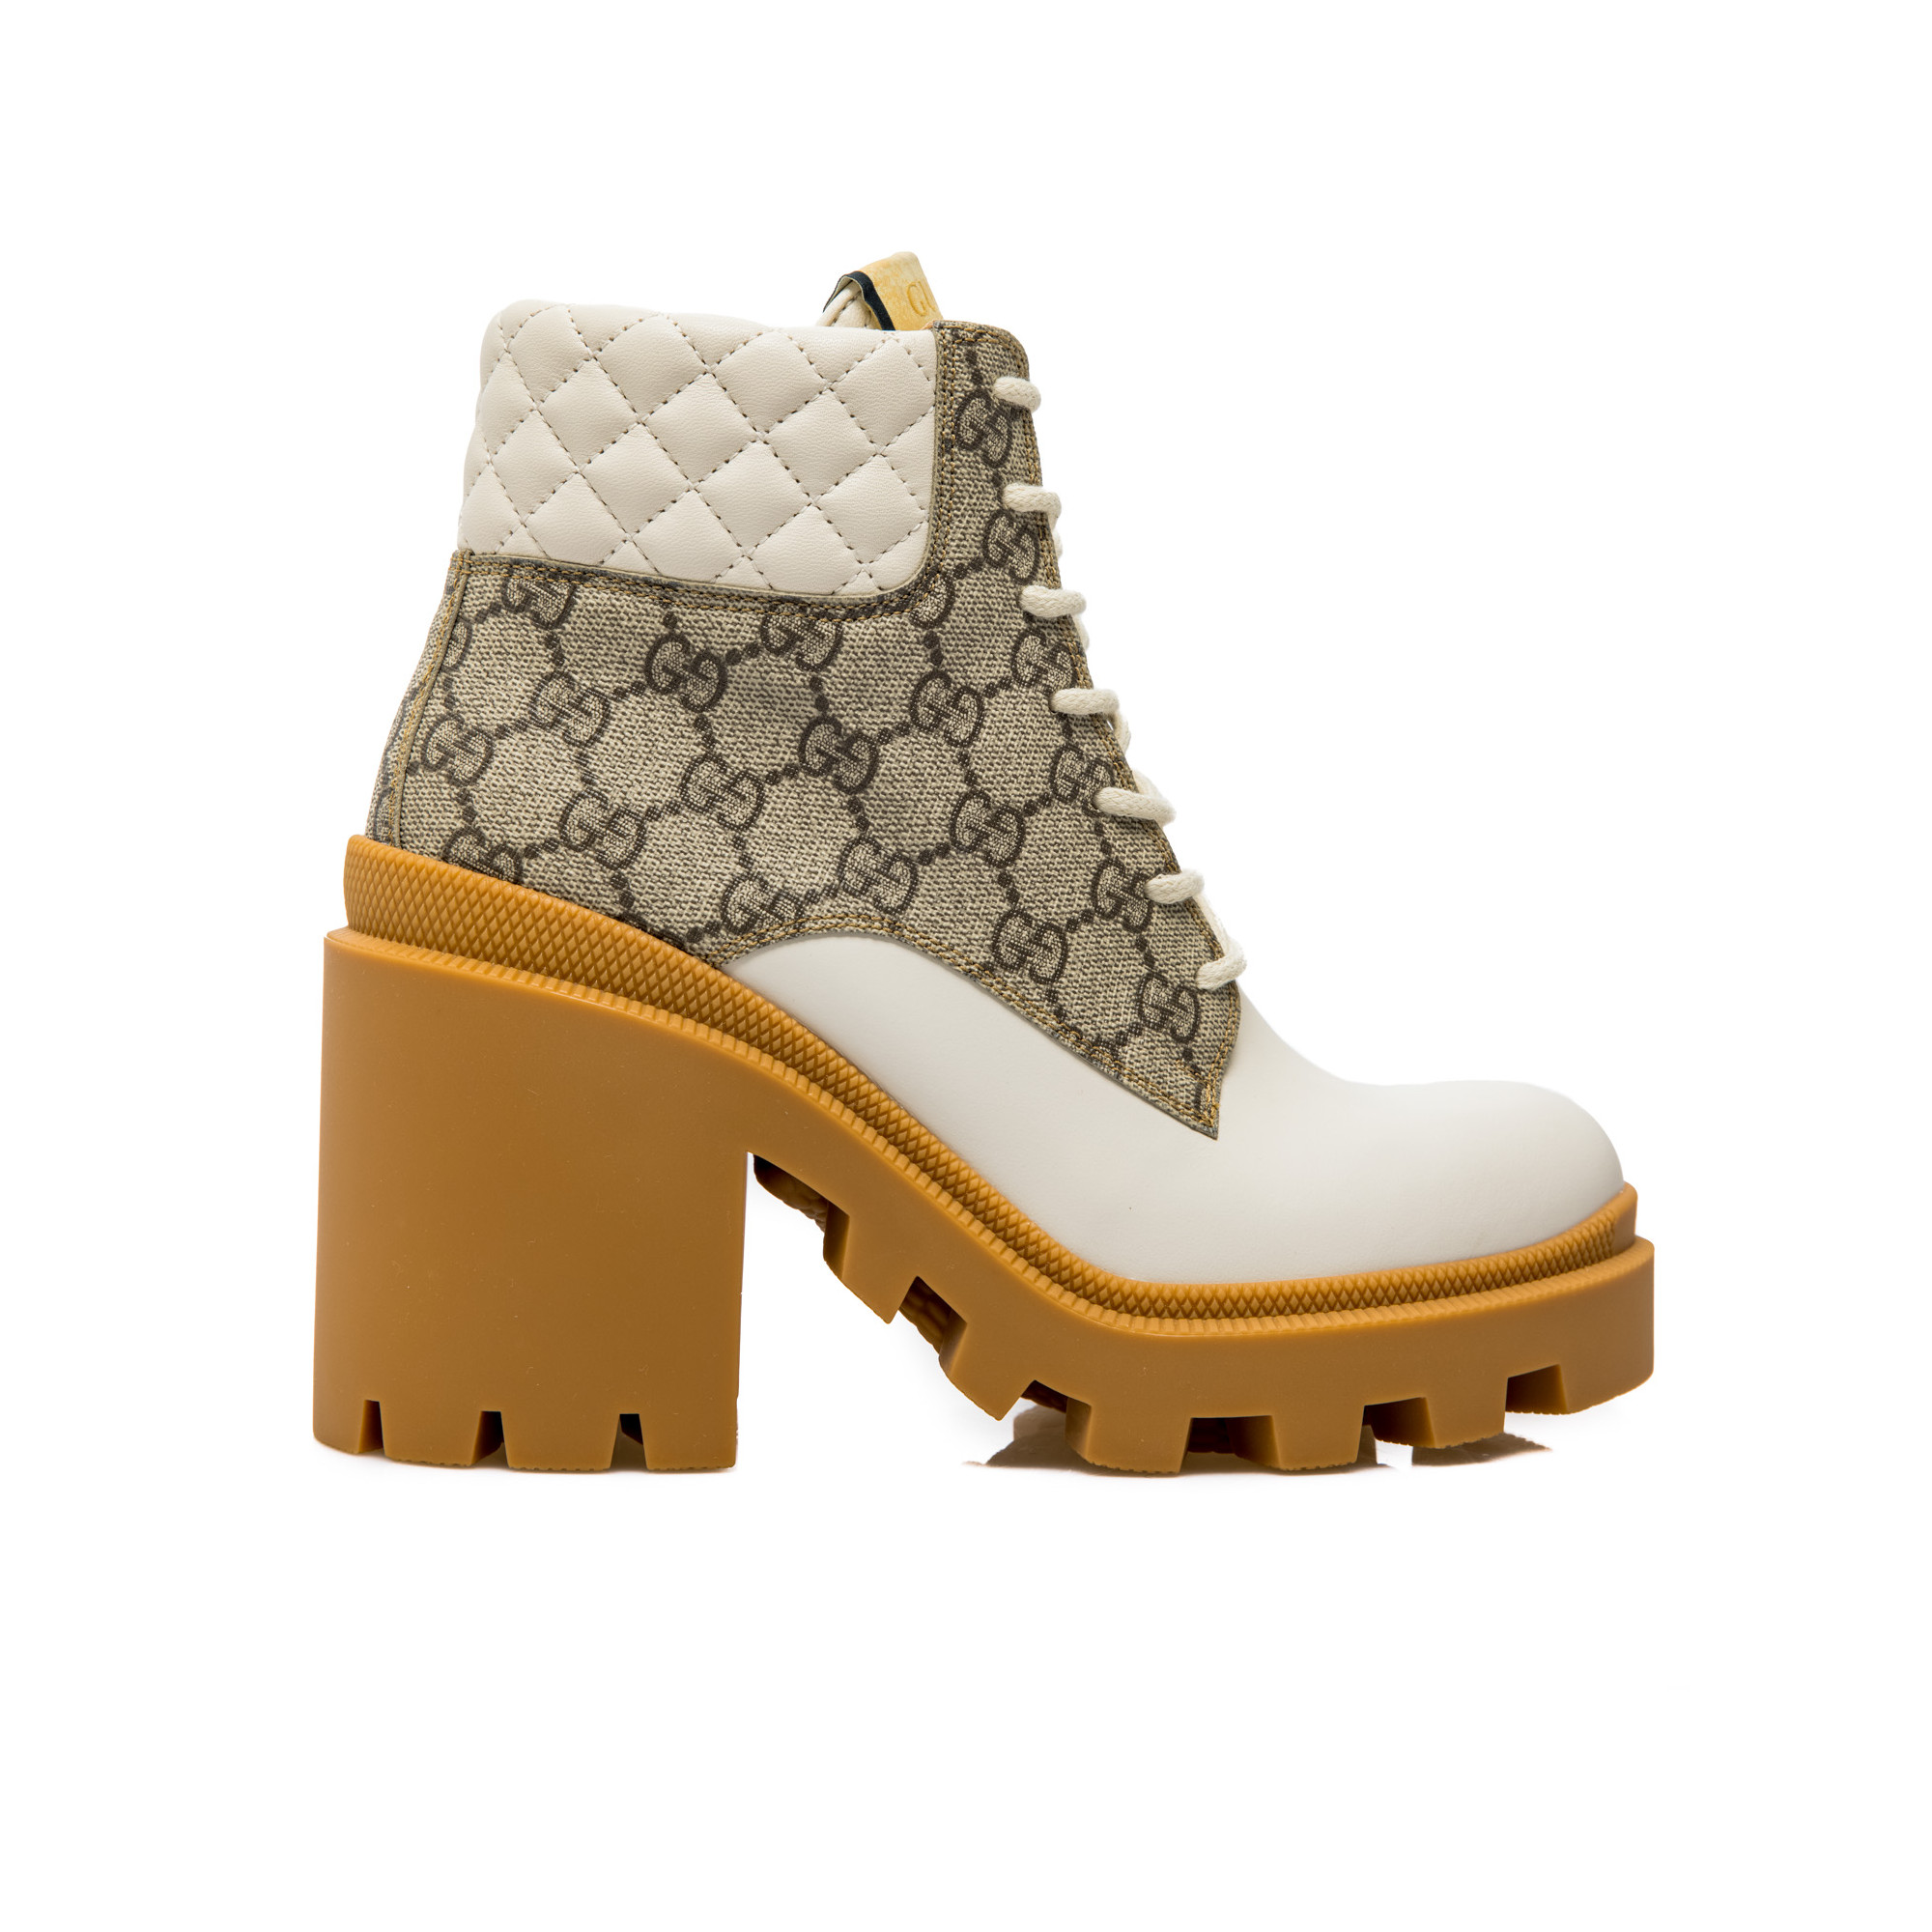 skak Uafhængighed Manhattan Gucci Boots Apollo White | Derodeloper.com